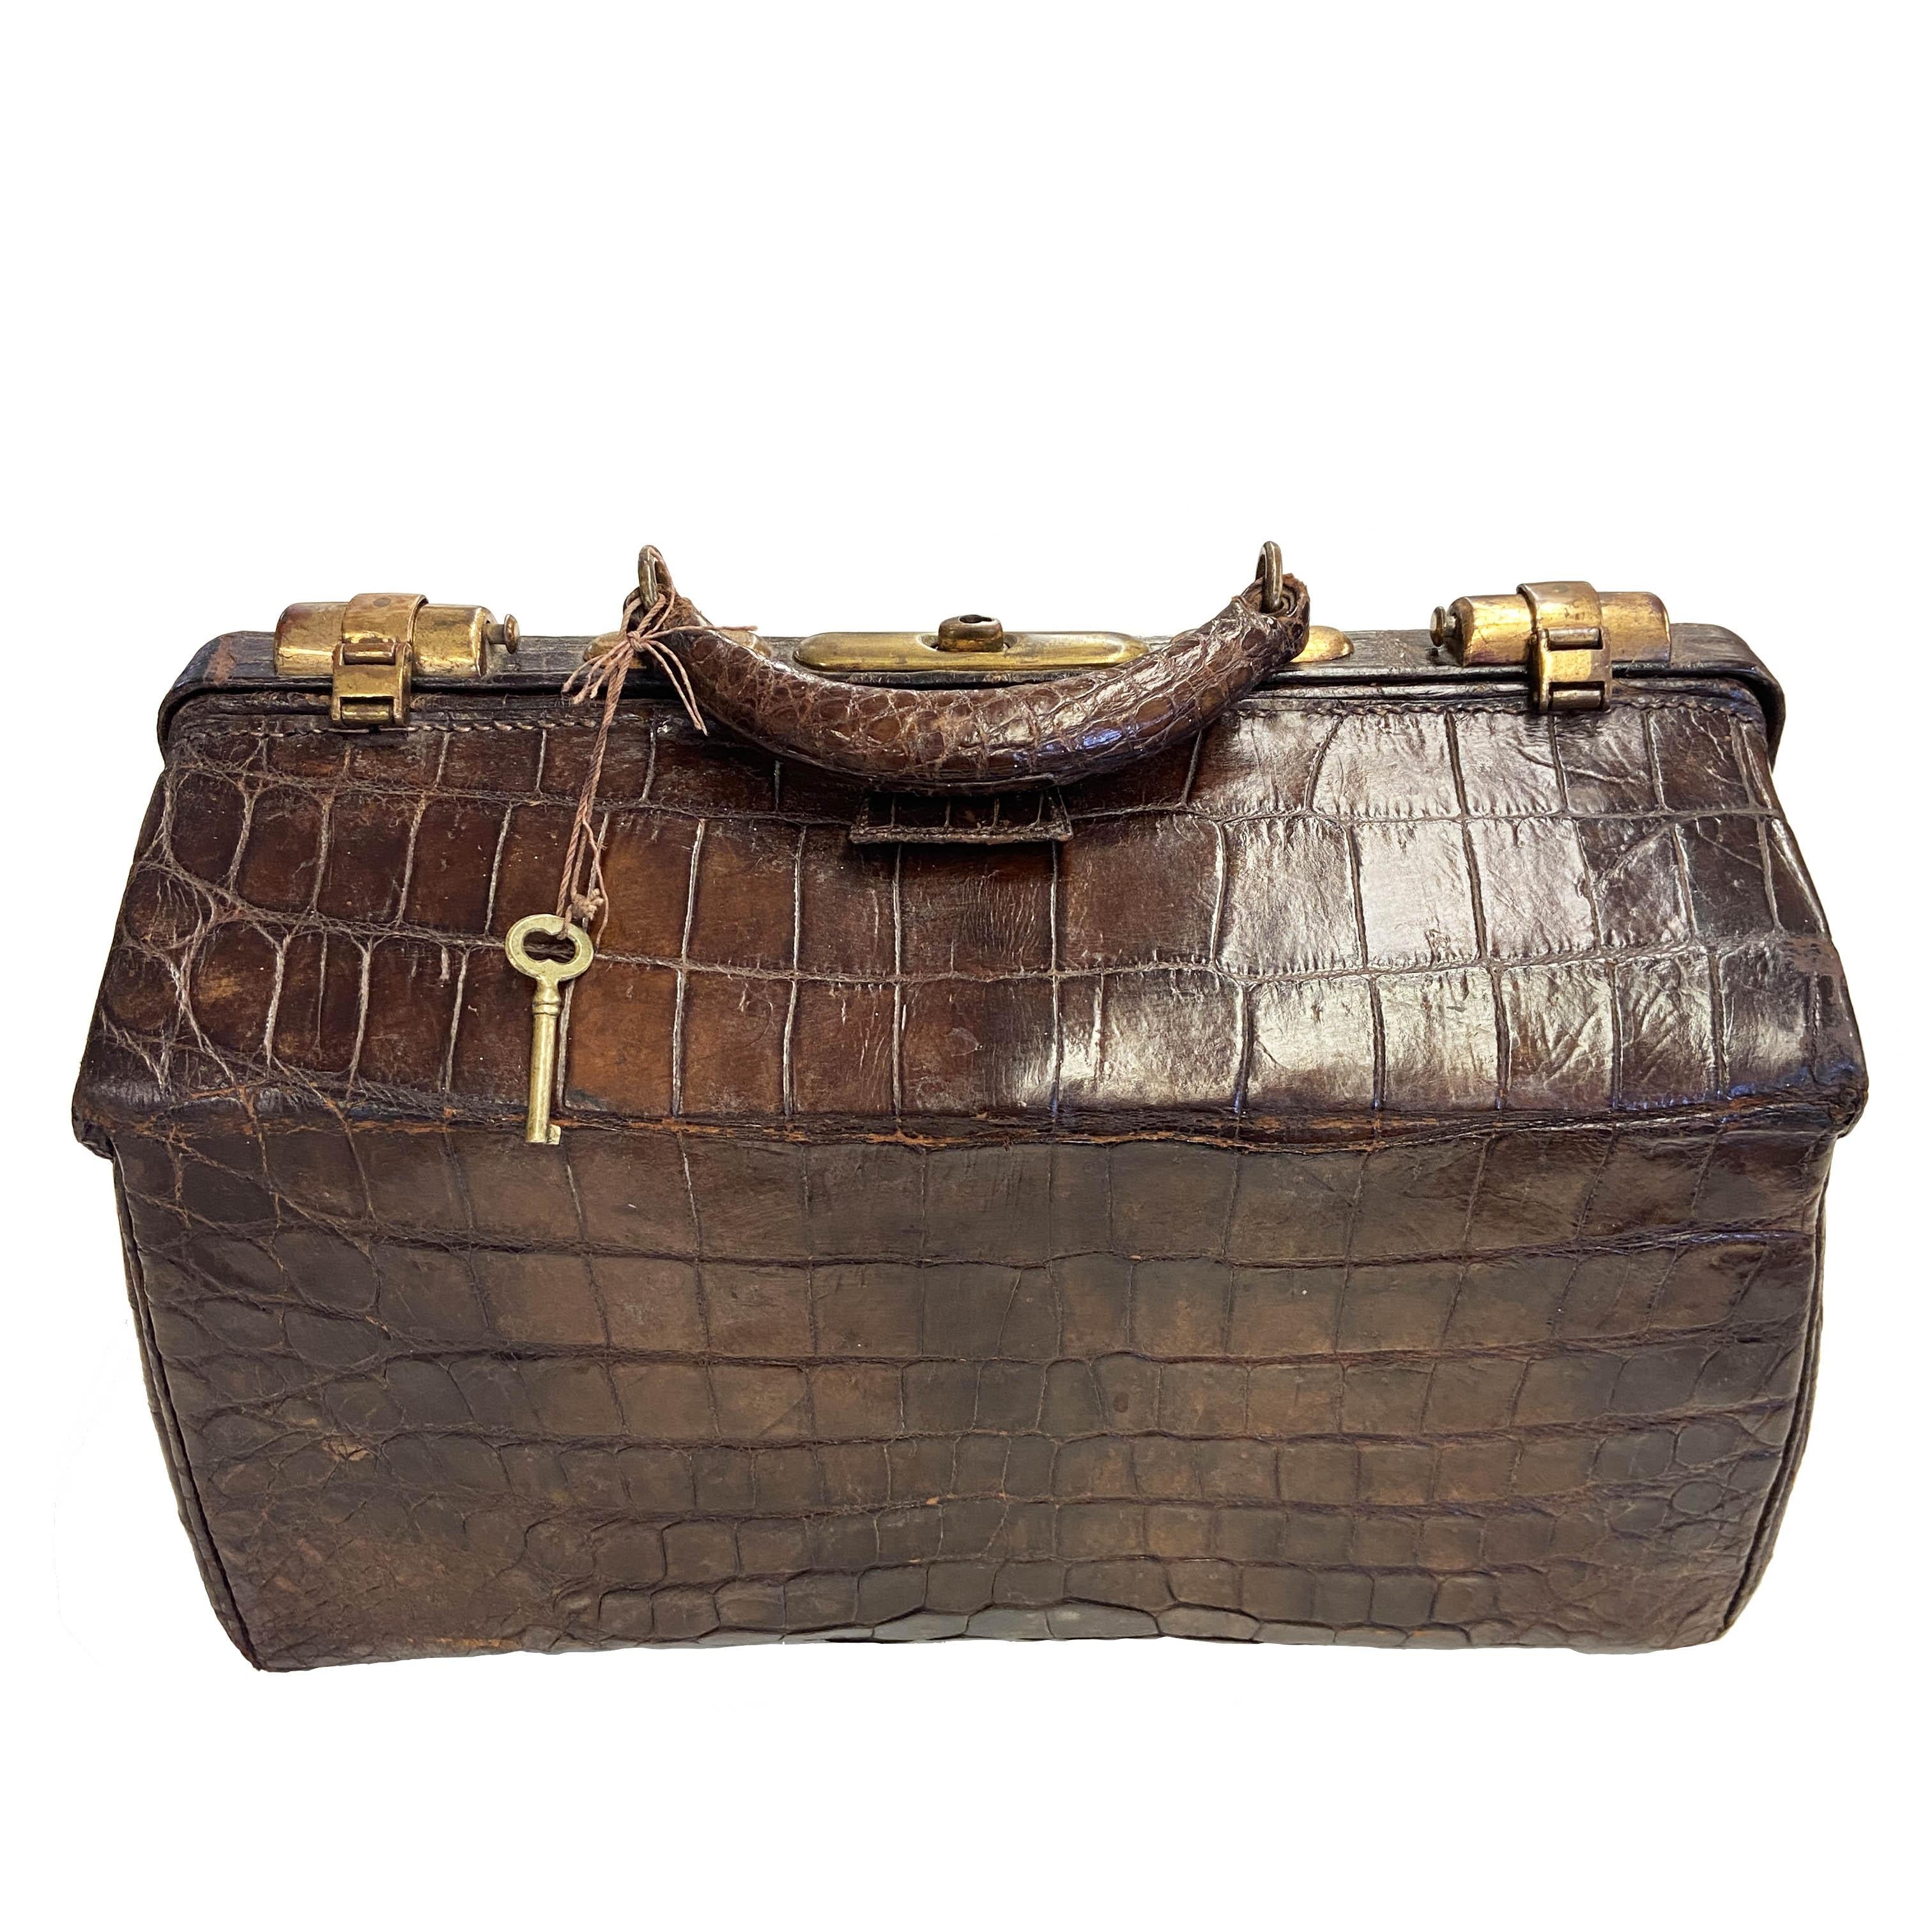 Diese prächtige und seltene antike viktorianische Arzttasche aus dem 19. Jahrhundert vom John Wanamaker Department Store ist aus echtem Alligatorleder gefertigt und in hervorragendem Zustand. Die ursprüngliche Hardware verriegelt und schließt schön,